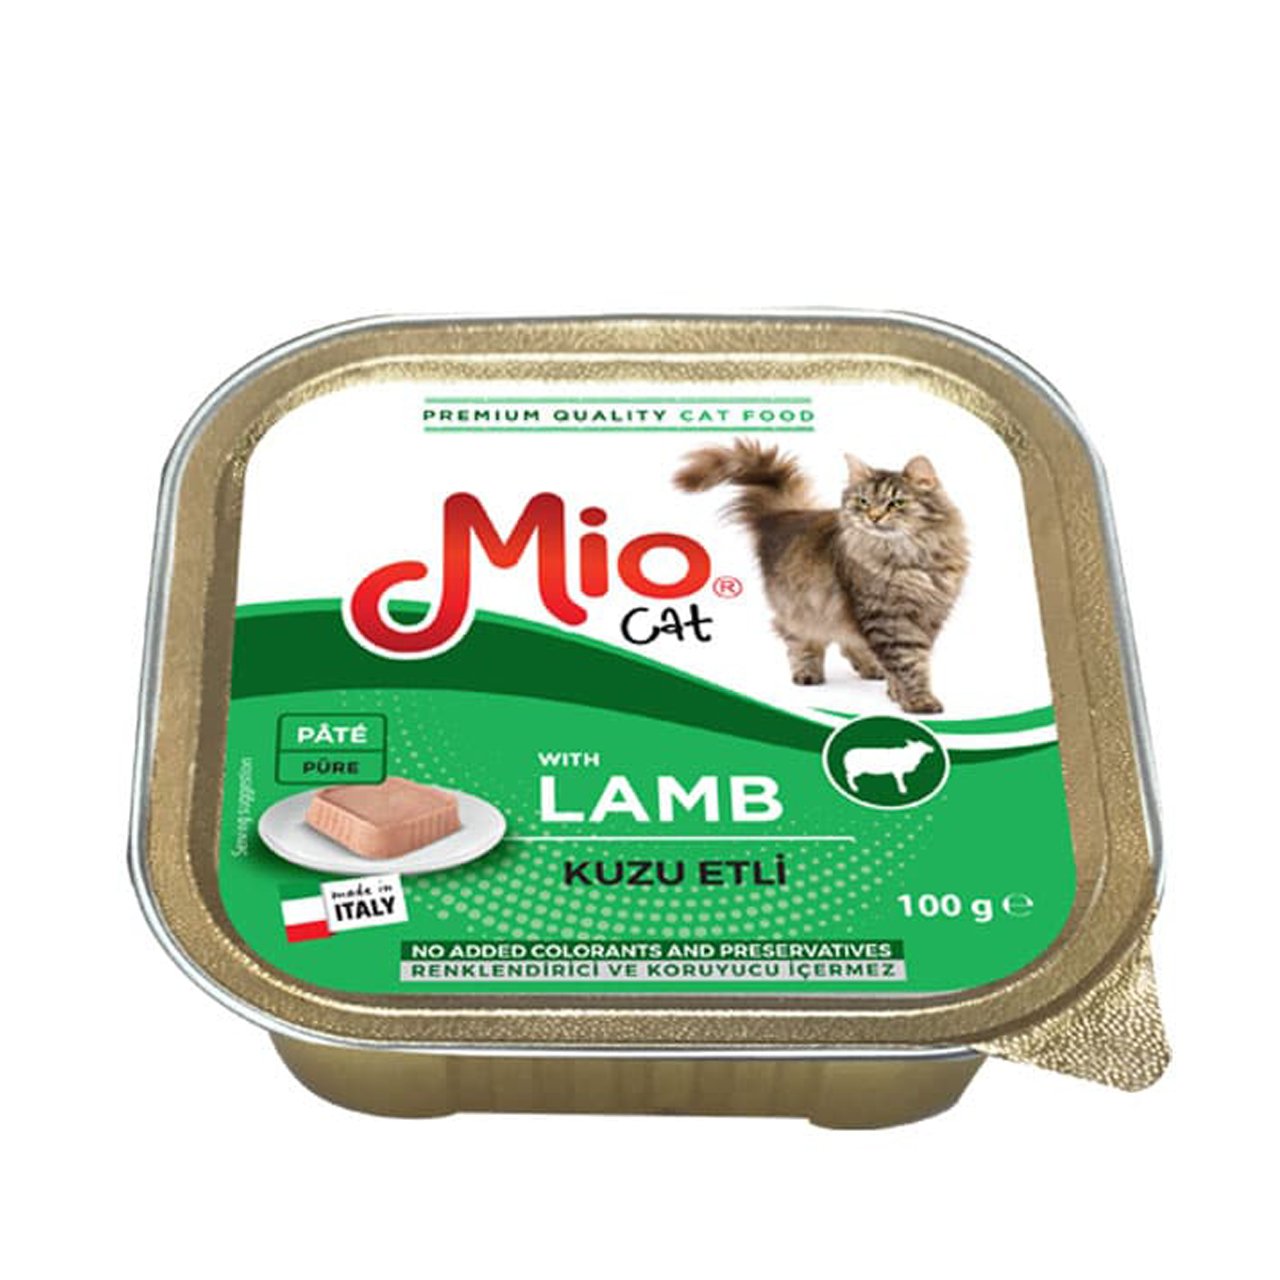 Mio Adut Lamb Pate Yetişkin Kediler İçin Kuzu Etli Püre Mama 100 gr